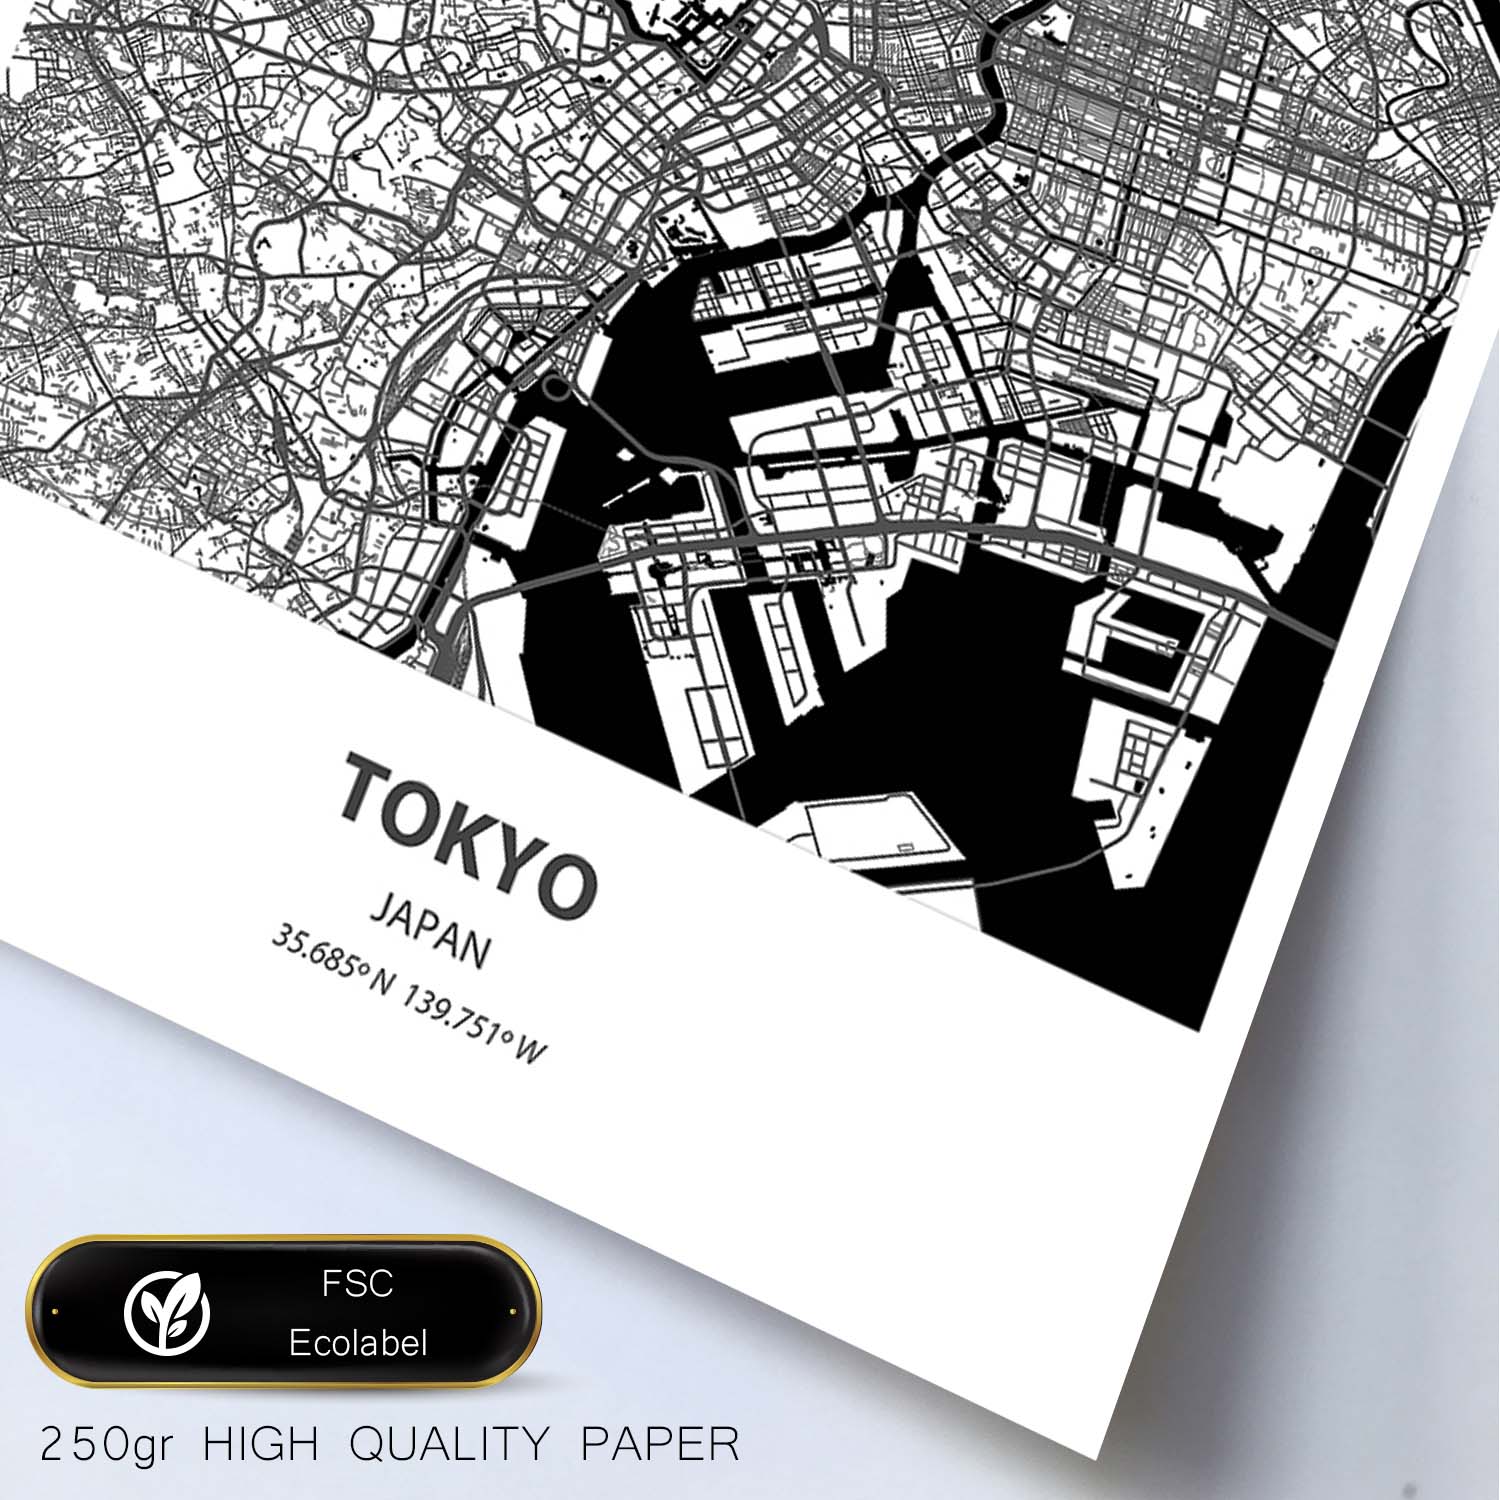 Poster con mapa de Tokio - Japon. Láminas de ciudades de Asia con mares y ríos en color negro.-Artwork-Nacnic-Nacnic Estudio SL